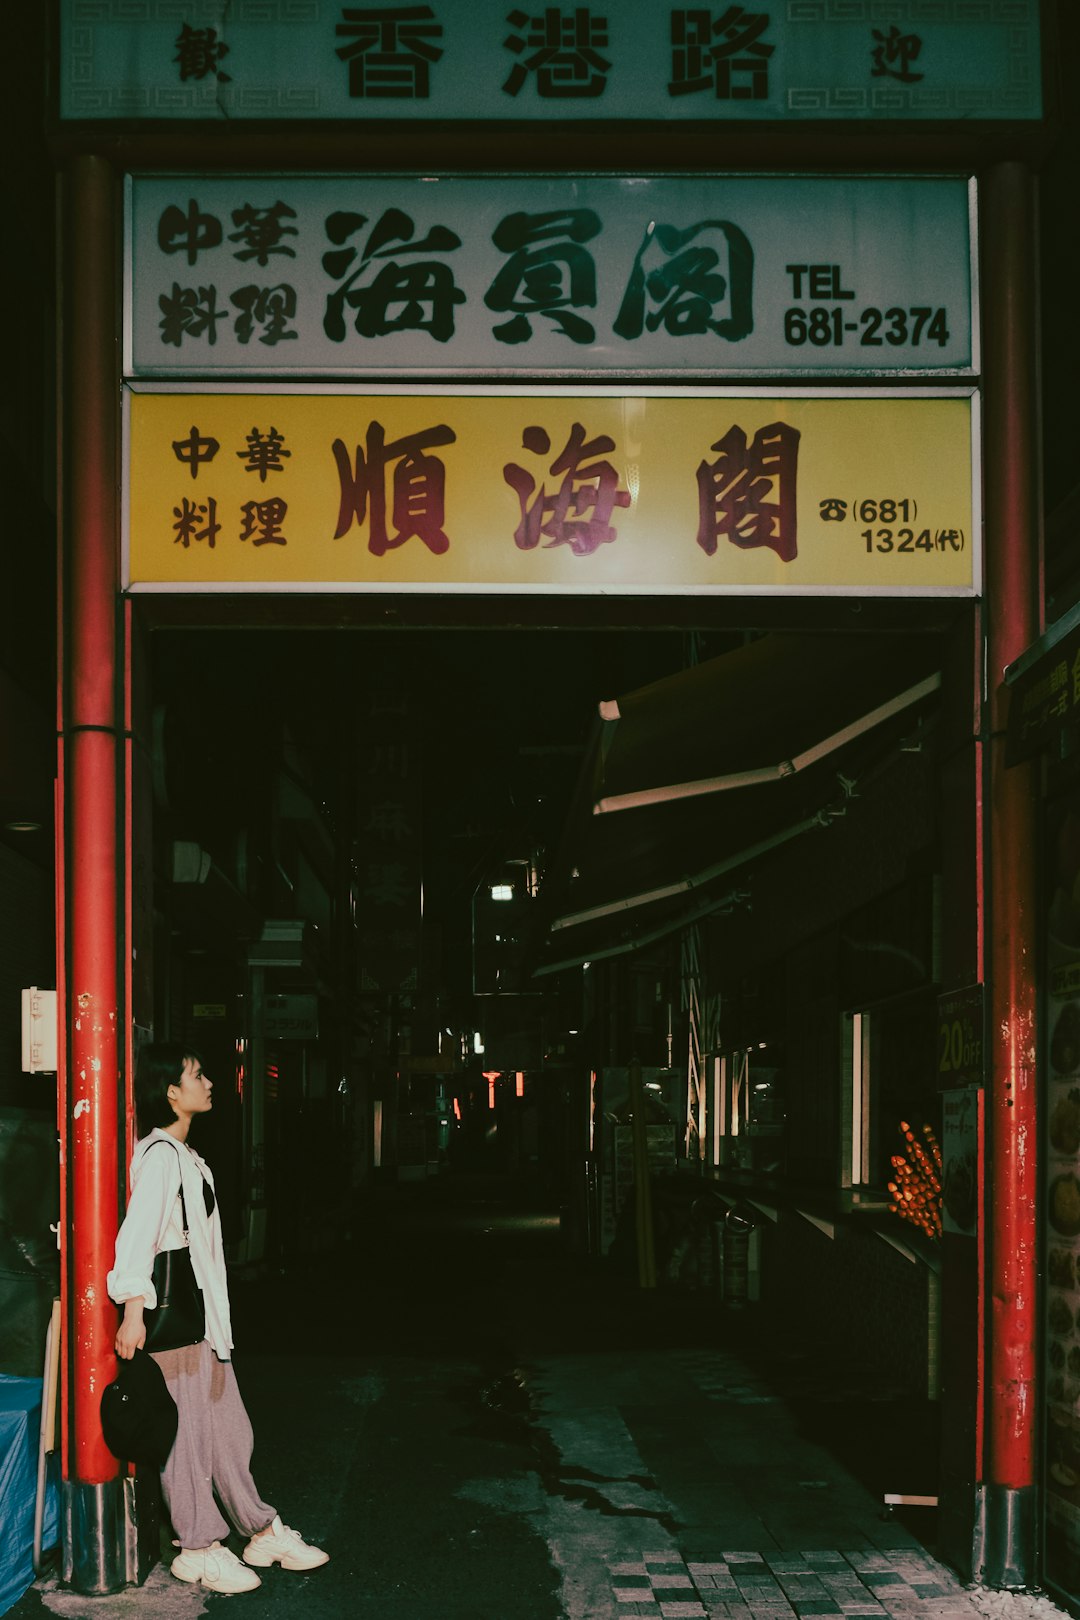 man in white dress shirt walking on street during nighttime